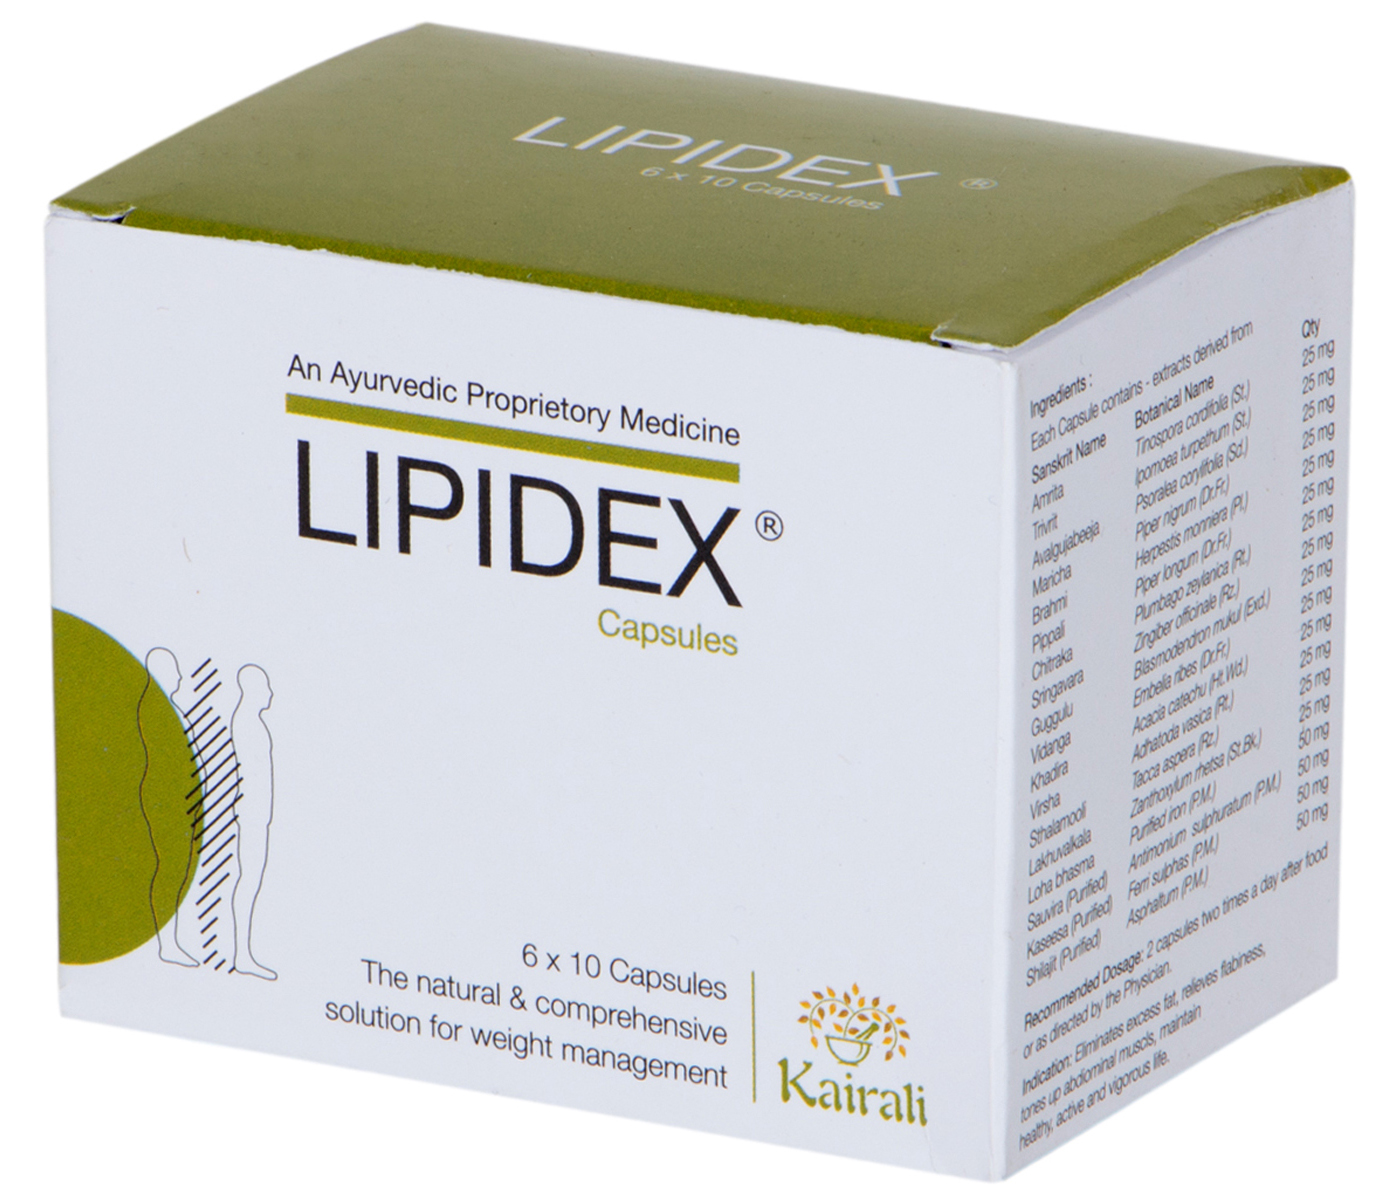 Buy Kairali Lipidex Capsules at Best Price Online